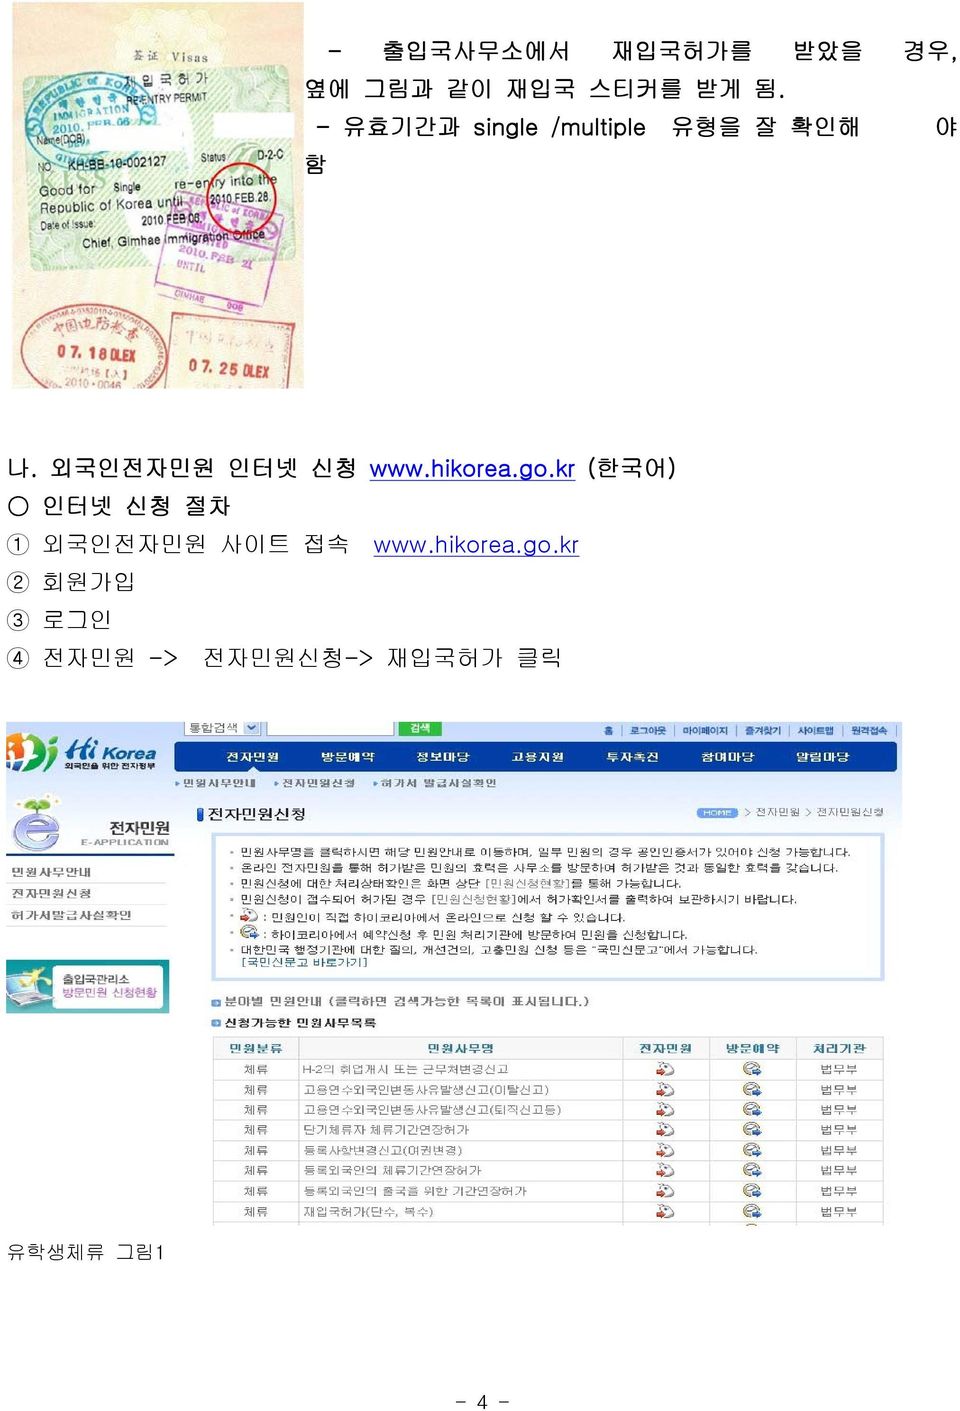 외국인전자민원 인터넷 신청 www.hikorea.go.